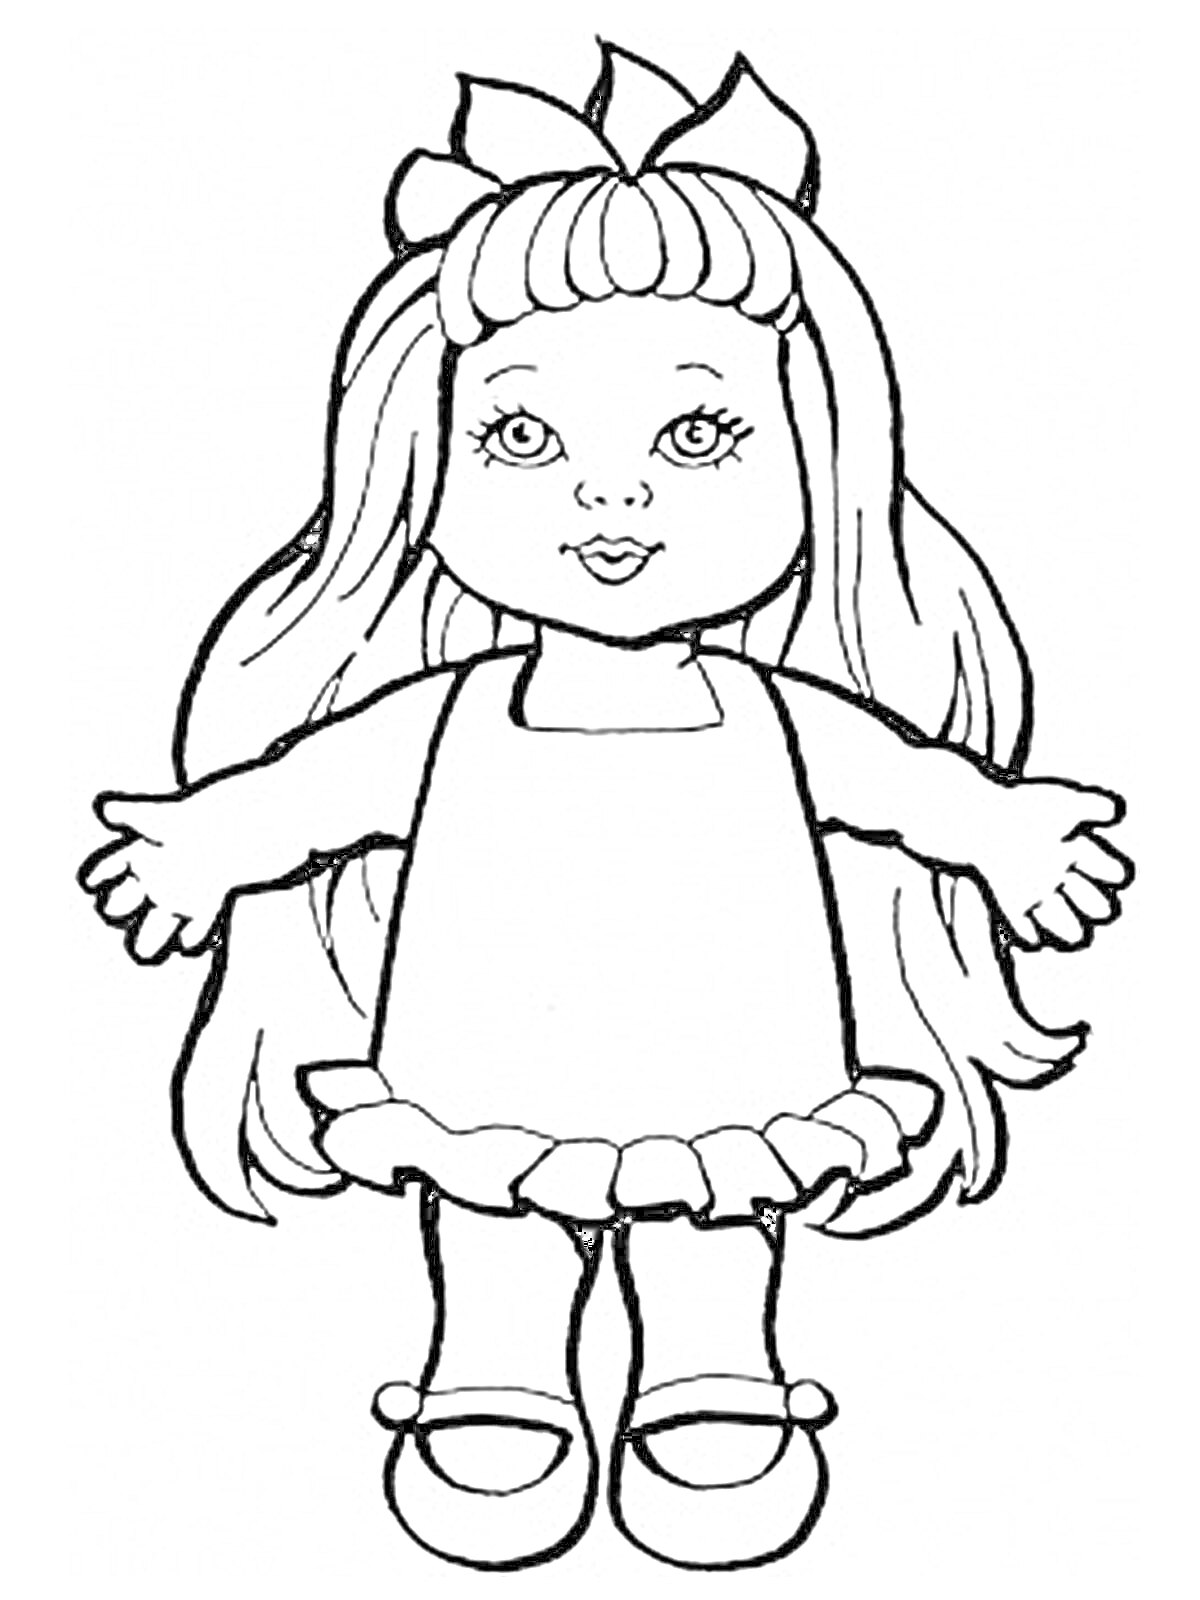 Раскраска кукла с длинными волосами, бантом, в платье с оборками и туфлях